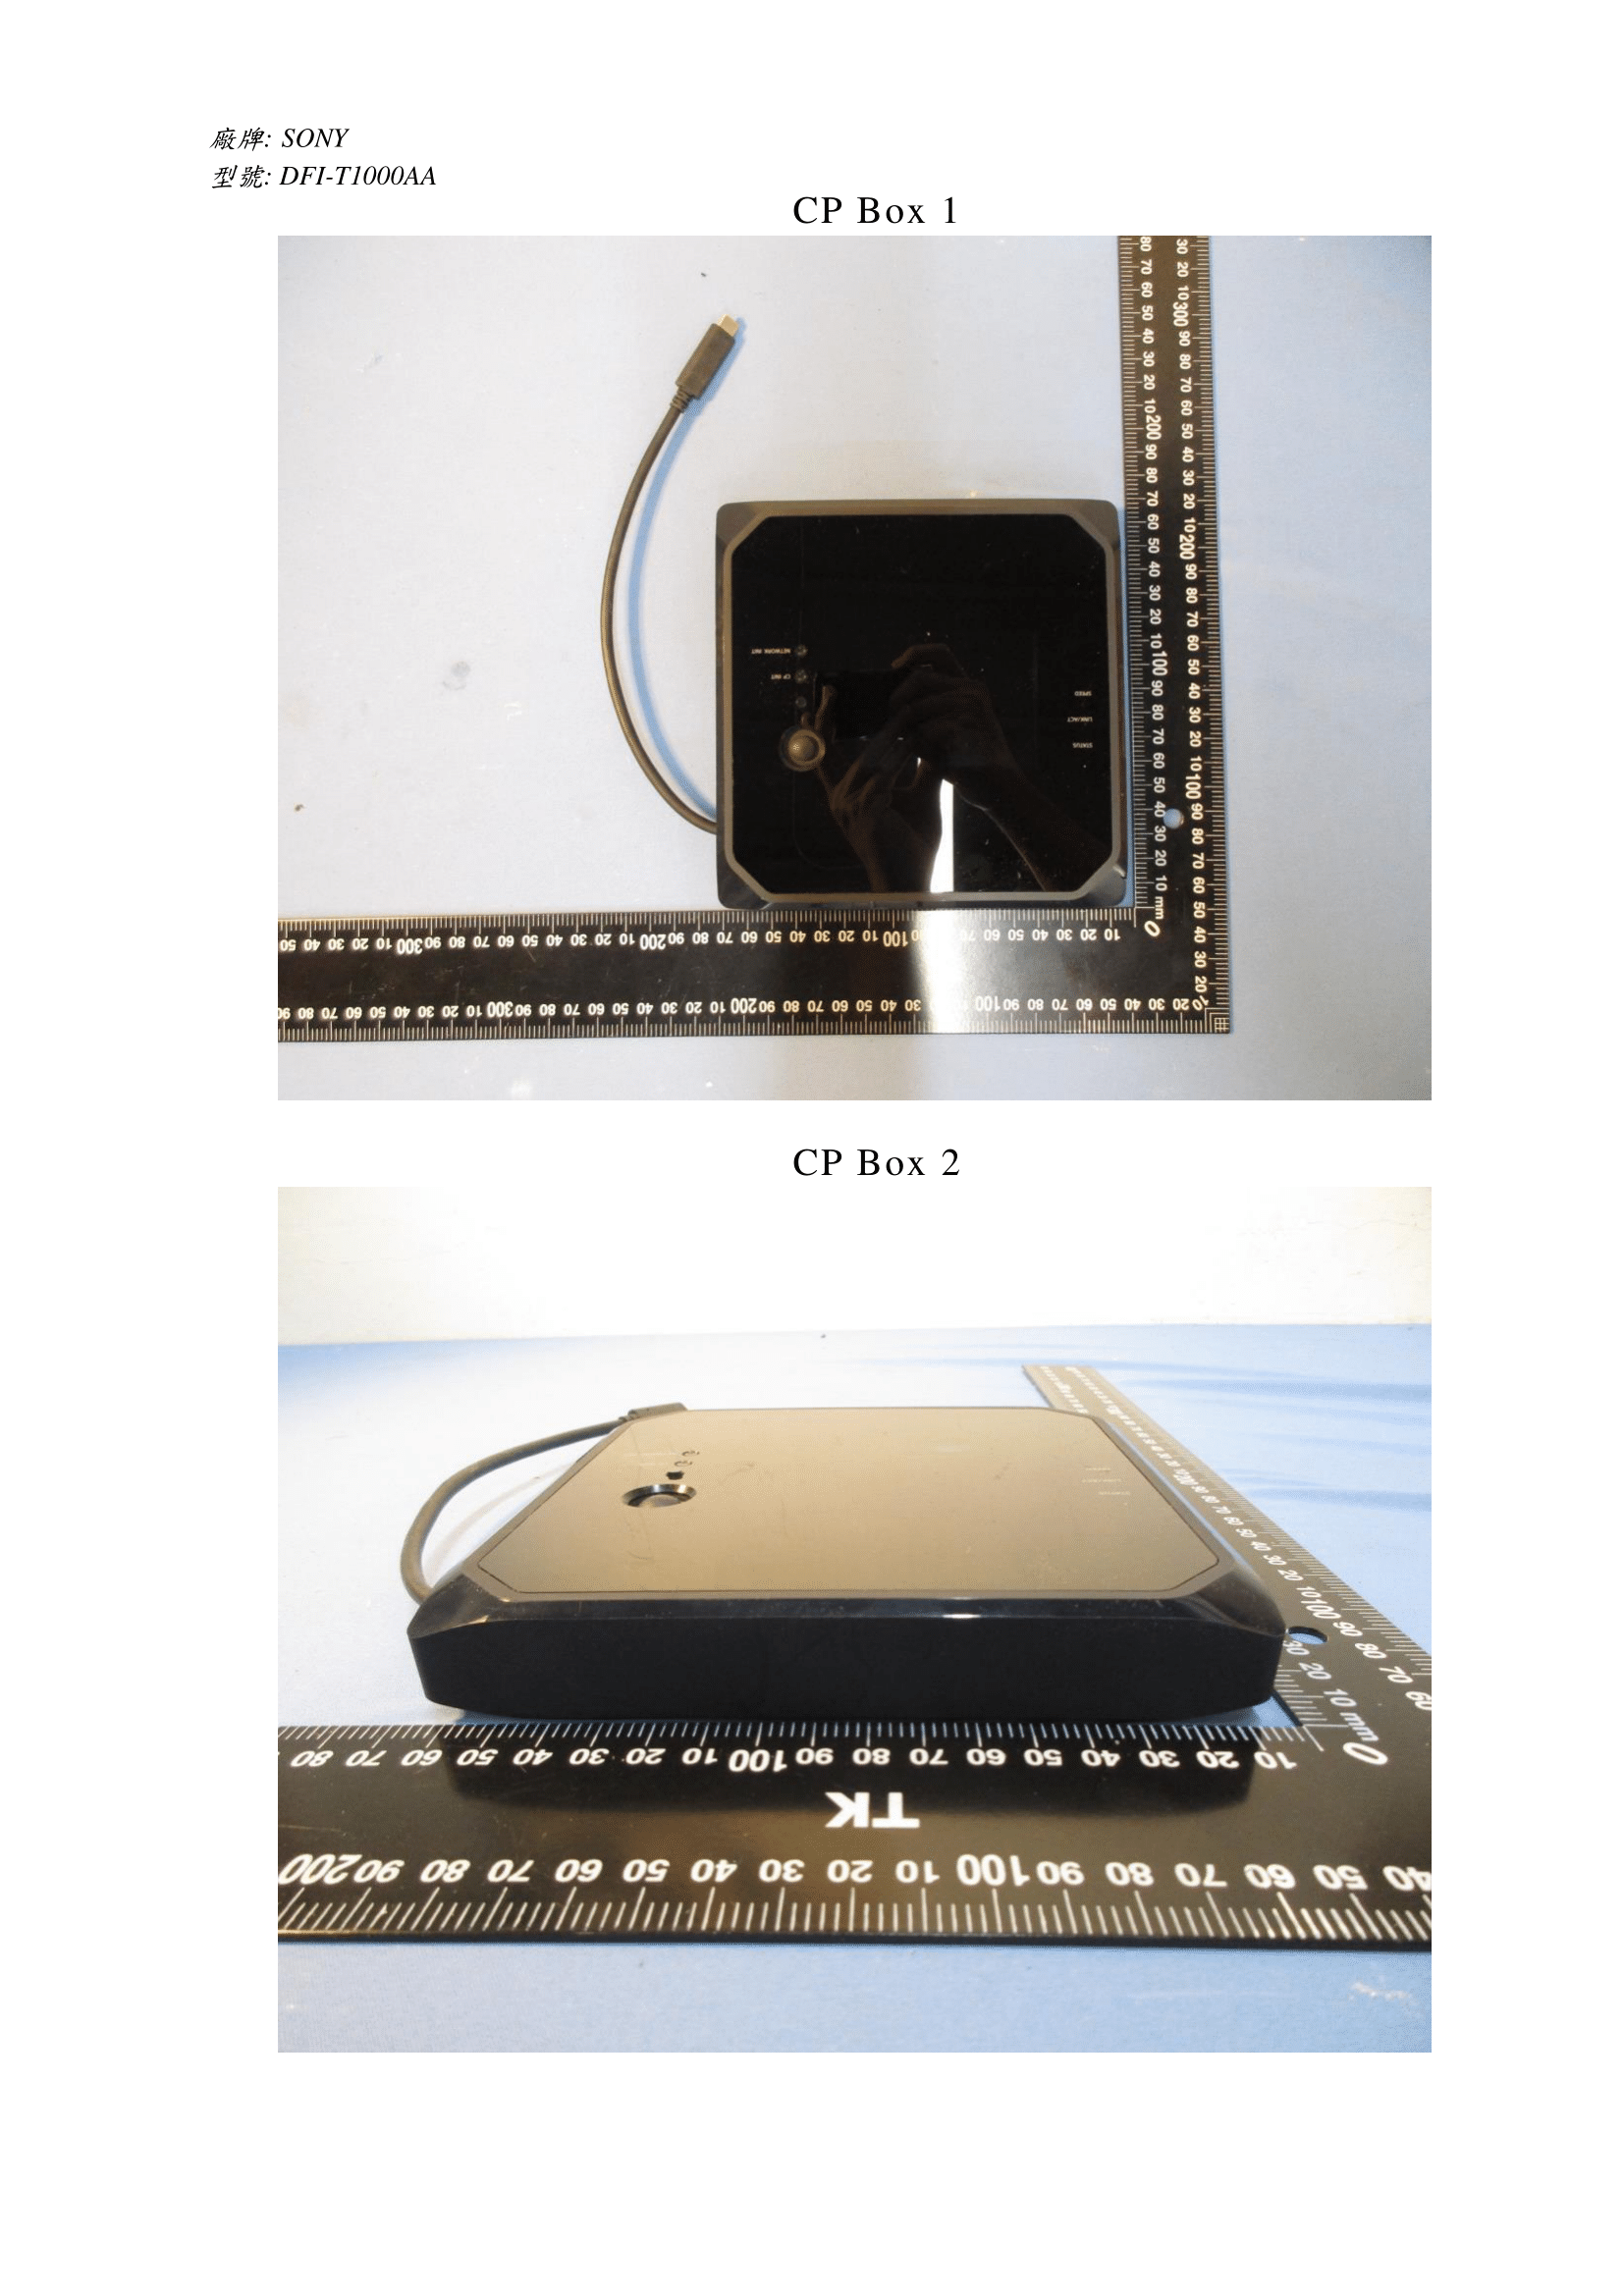 速報＠保管庫(Alt) : [PS5]PS5のデバッギングステーション？「DFI-T1000AA」の認証用画像が台湾から漏れる、謎の開発用周辺